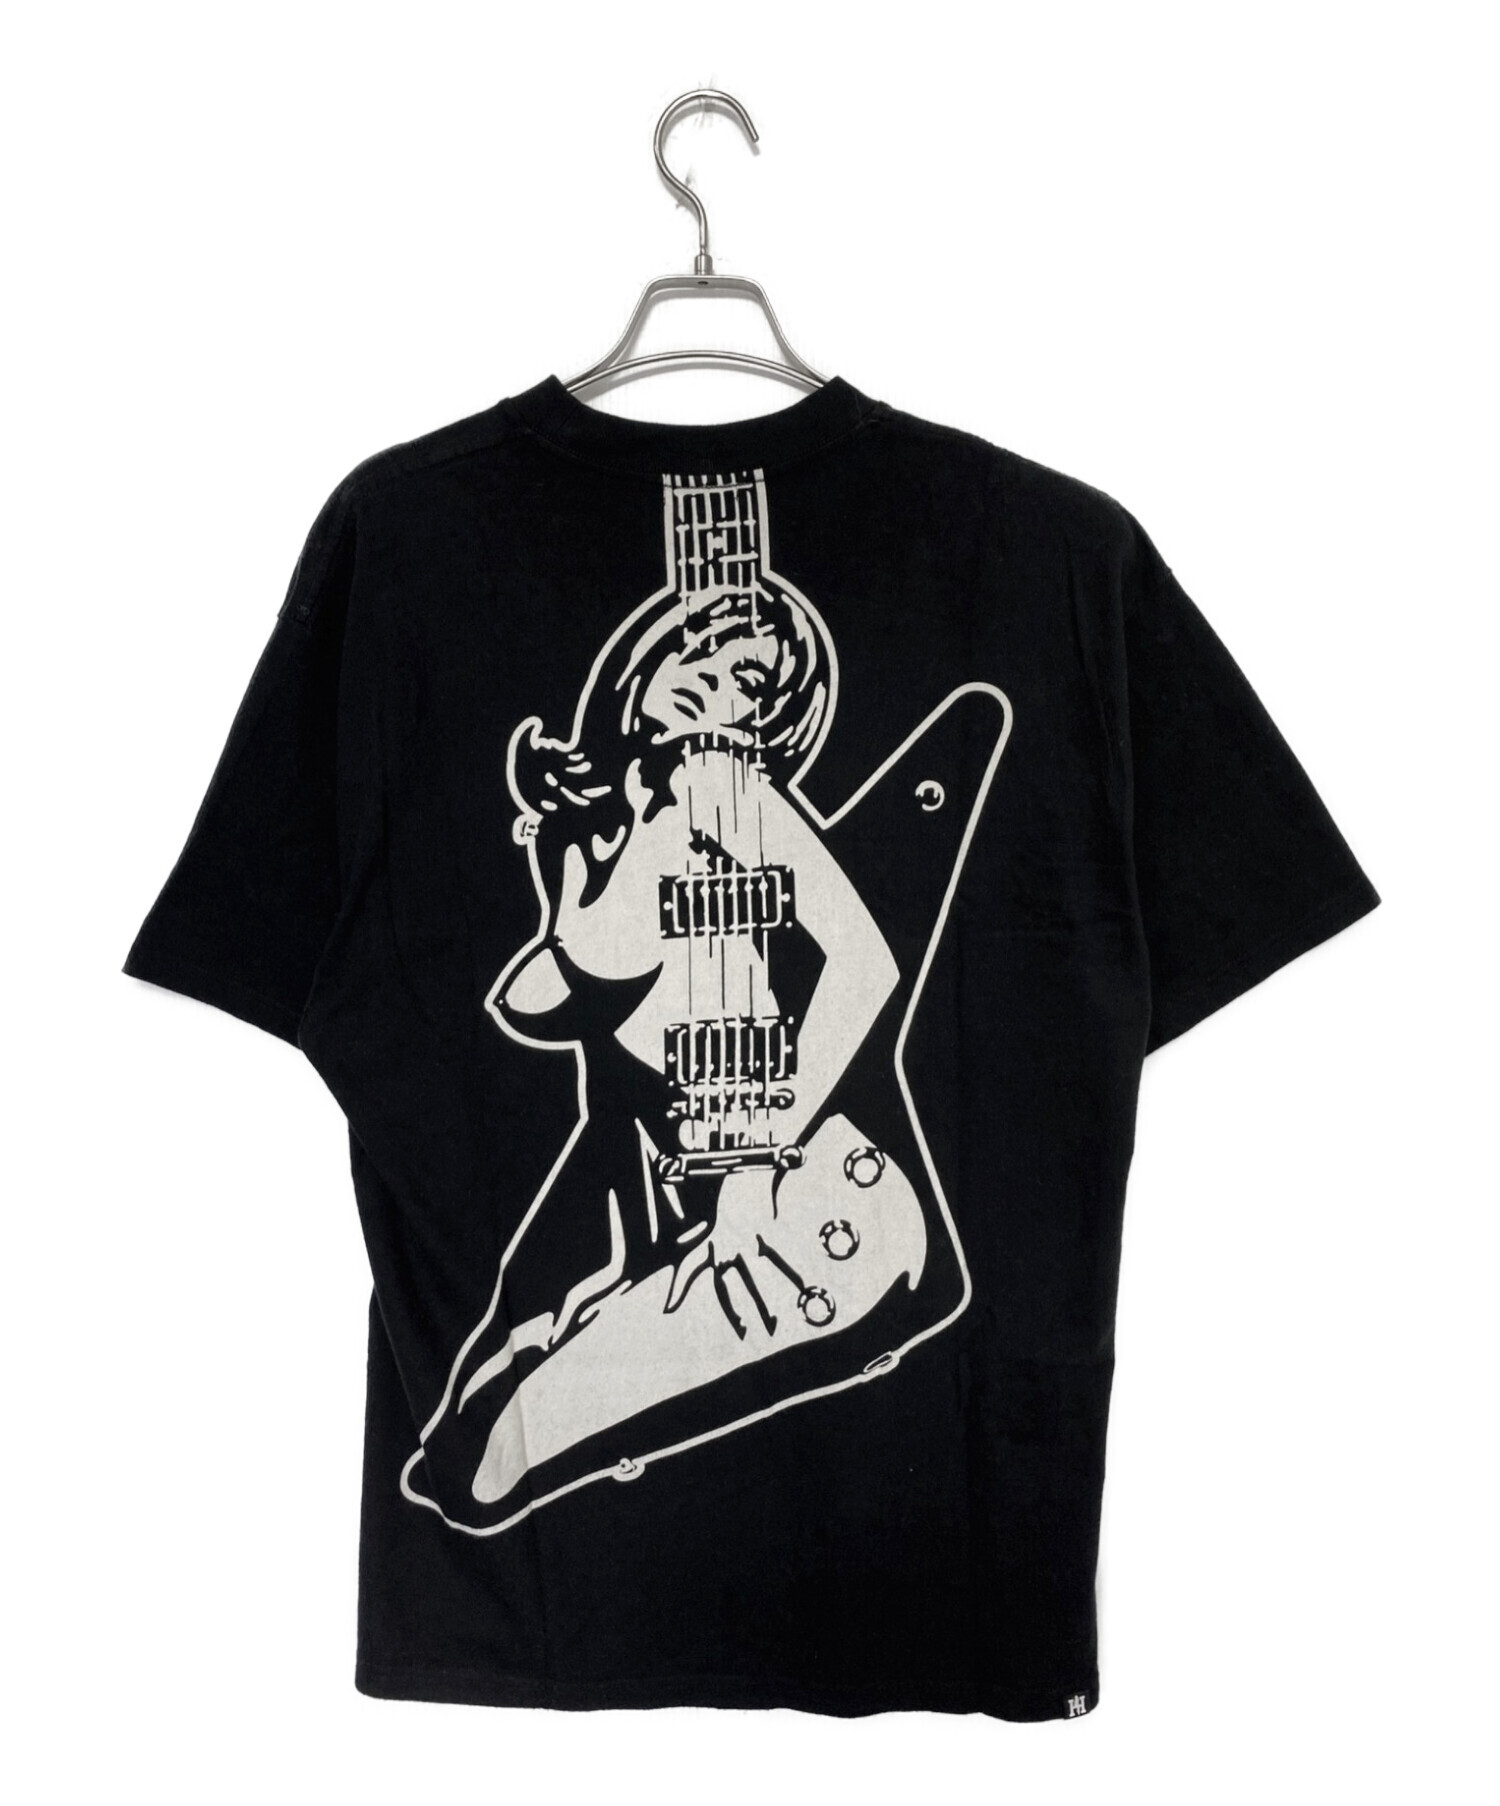 9,366円【最高デザイン】ヒステリックグラマー☆ギター サークル ガール tシャツ 黒 L